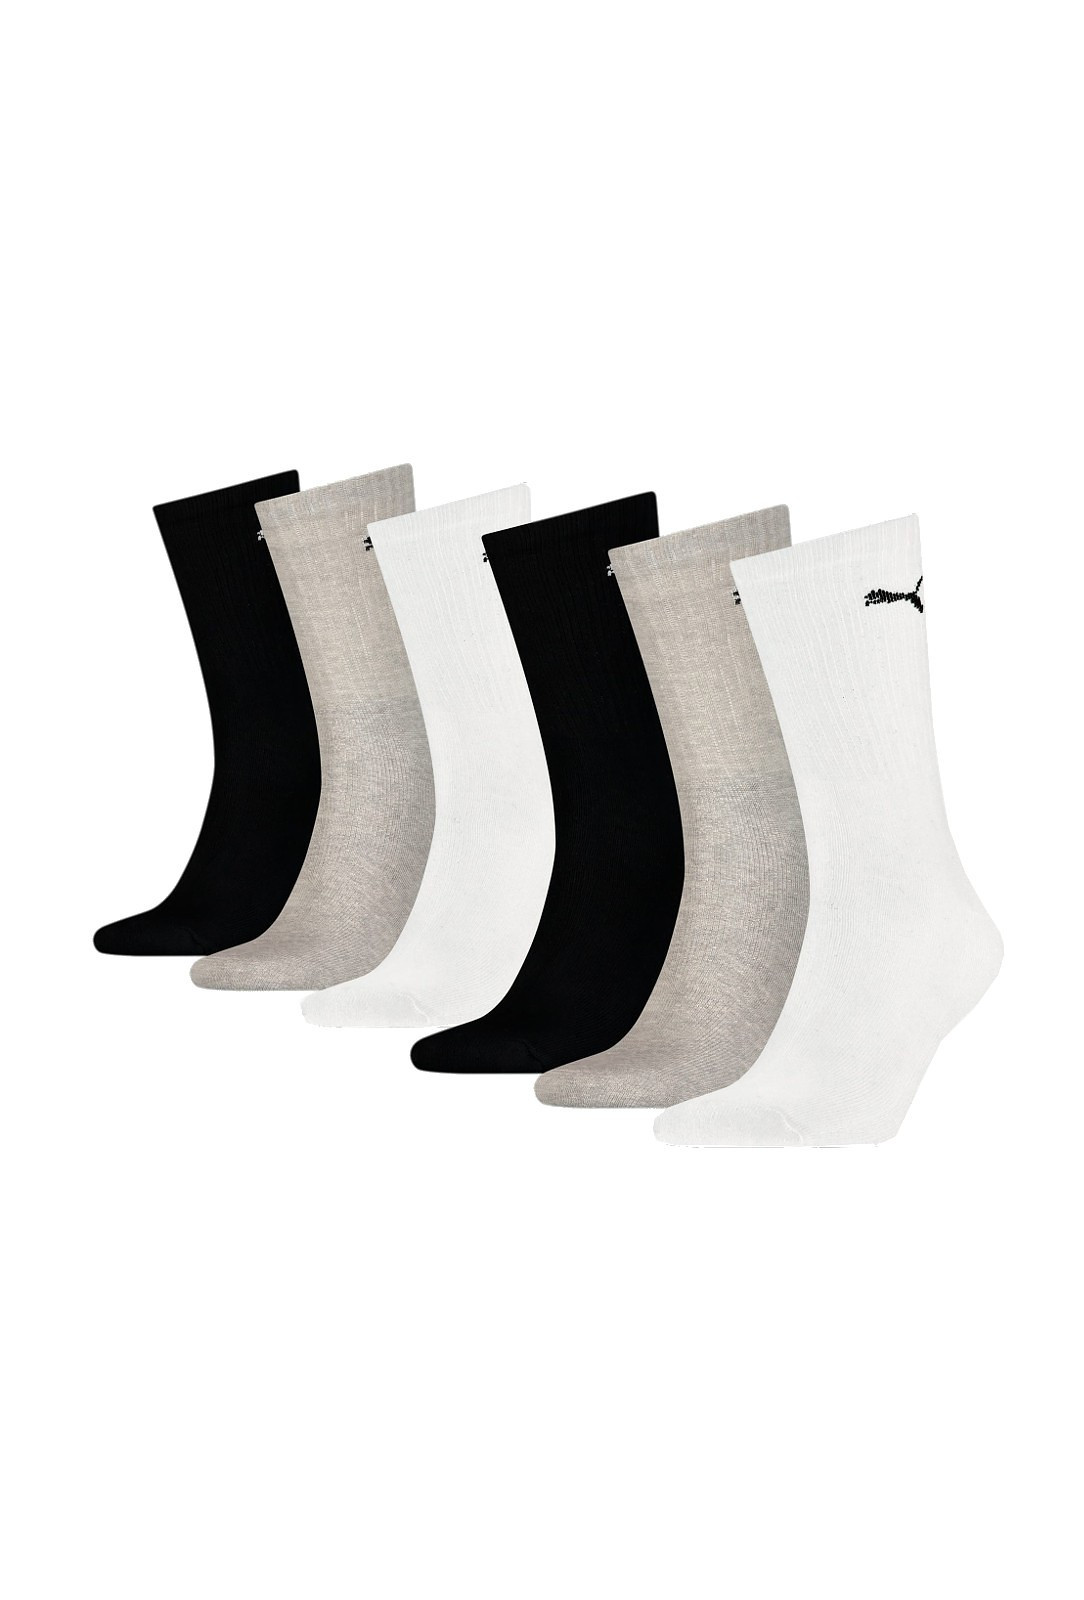 Dámské/pánské ponožky Puma 906656 Crew Soft Cotton A'6 35-46 šedo-bílo-černá 43-46